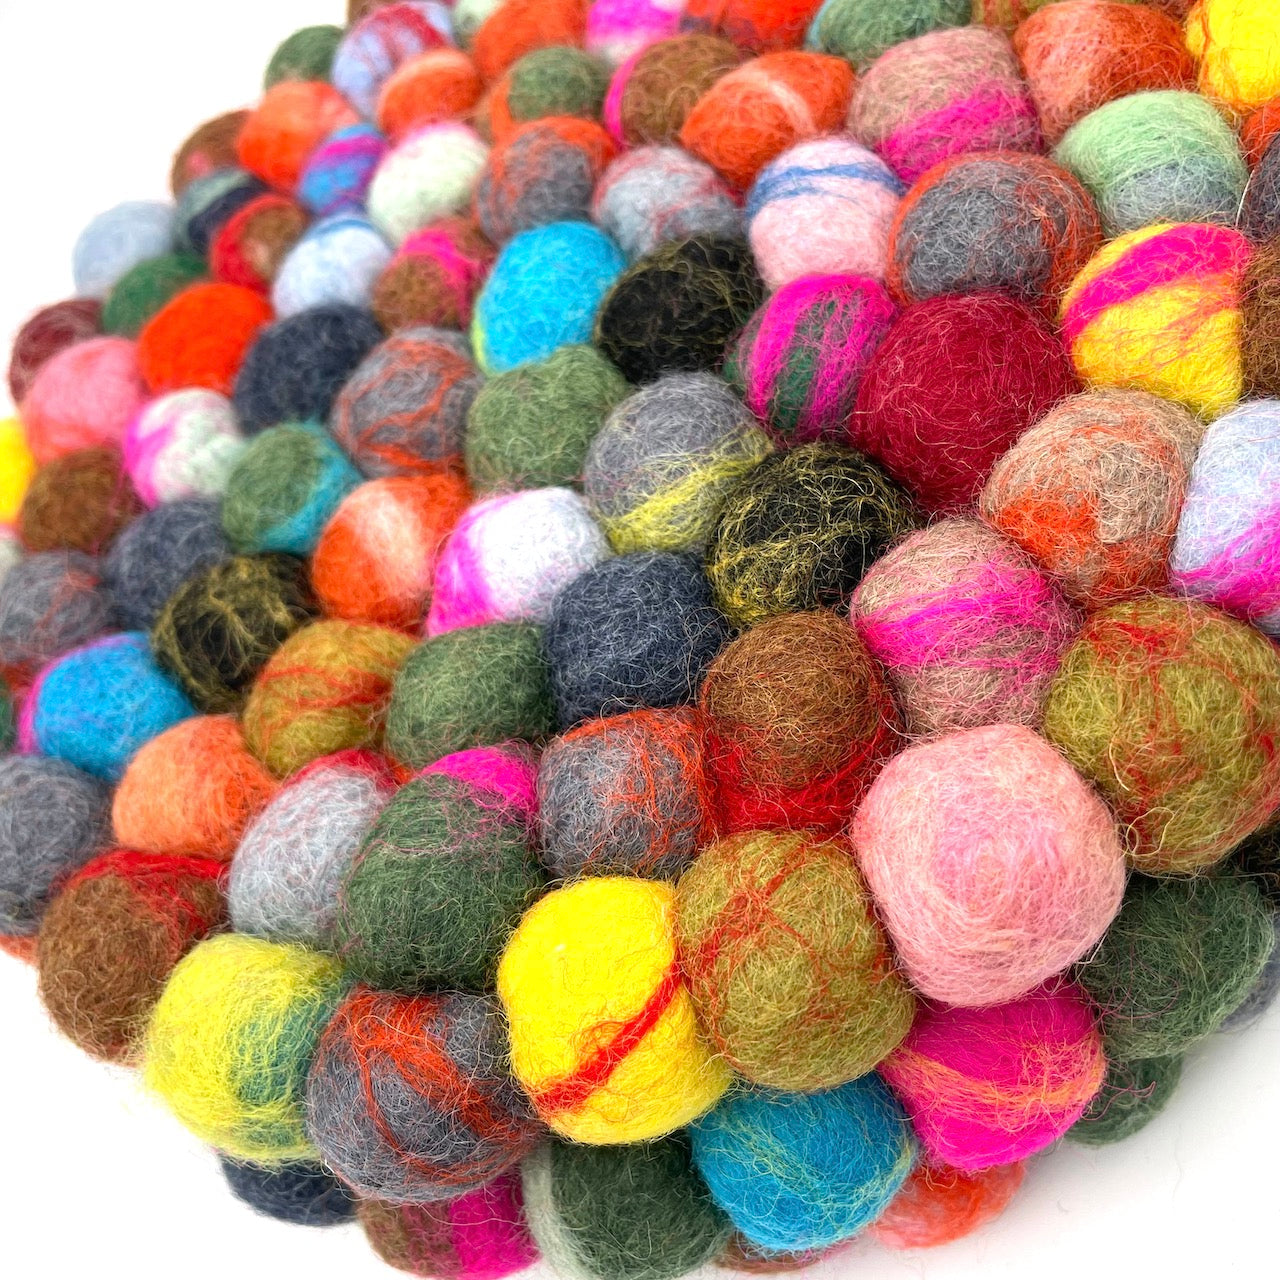 Marbled Multi-color Felt Ball Trivet